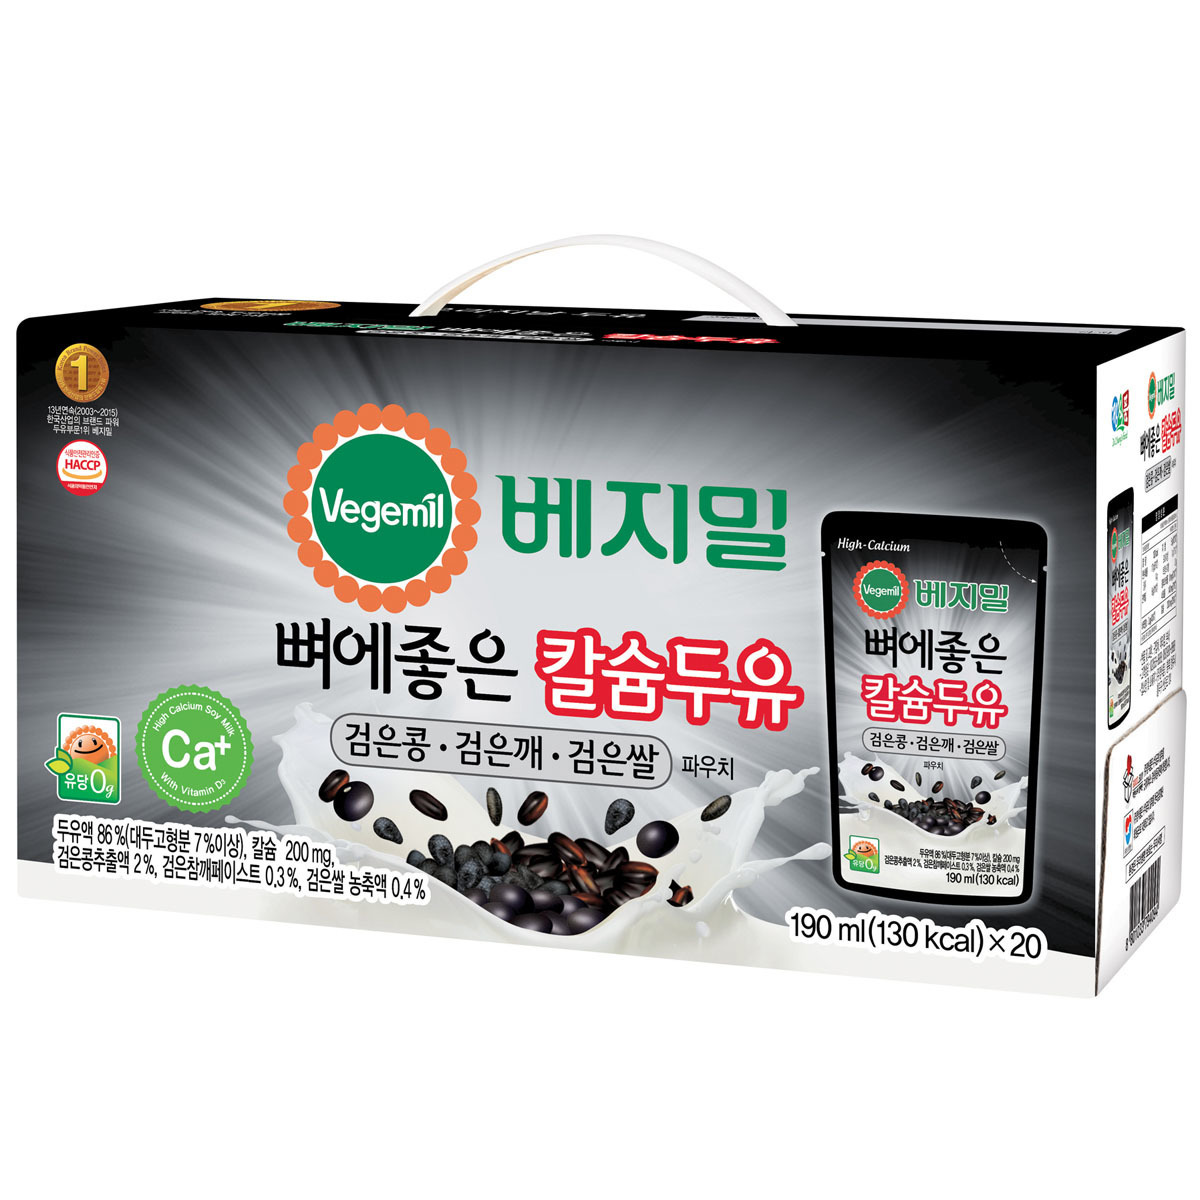 베지밀 검은콩＆깨＆쌀 두유 190ml x 20 x 3박스